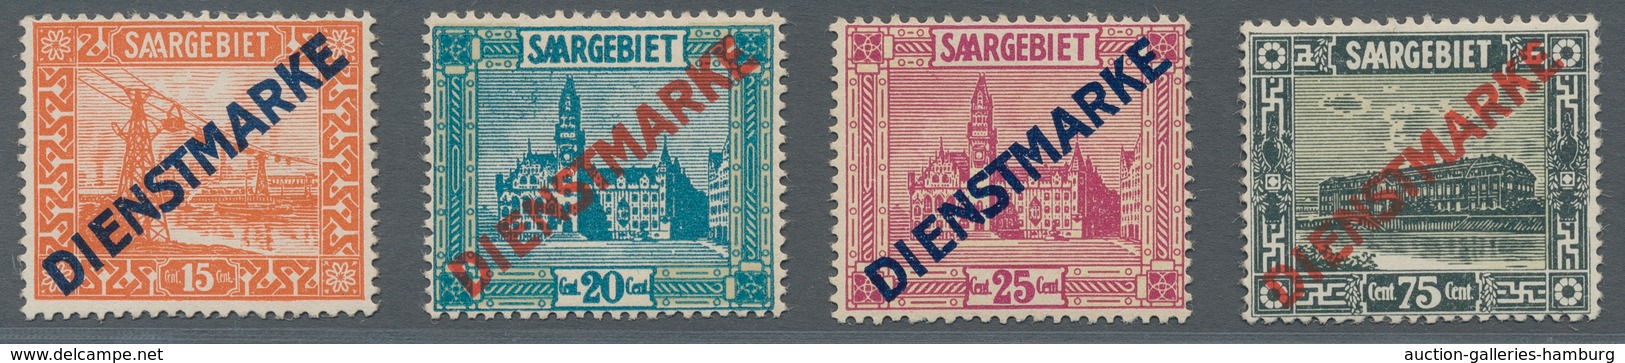 Deutsche Abstimmungsgebiete: Saargebiet - Dienstmarken: 1922-1929, Dienst 11 I Und II Sind Dabei, üb - Officials